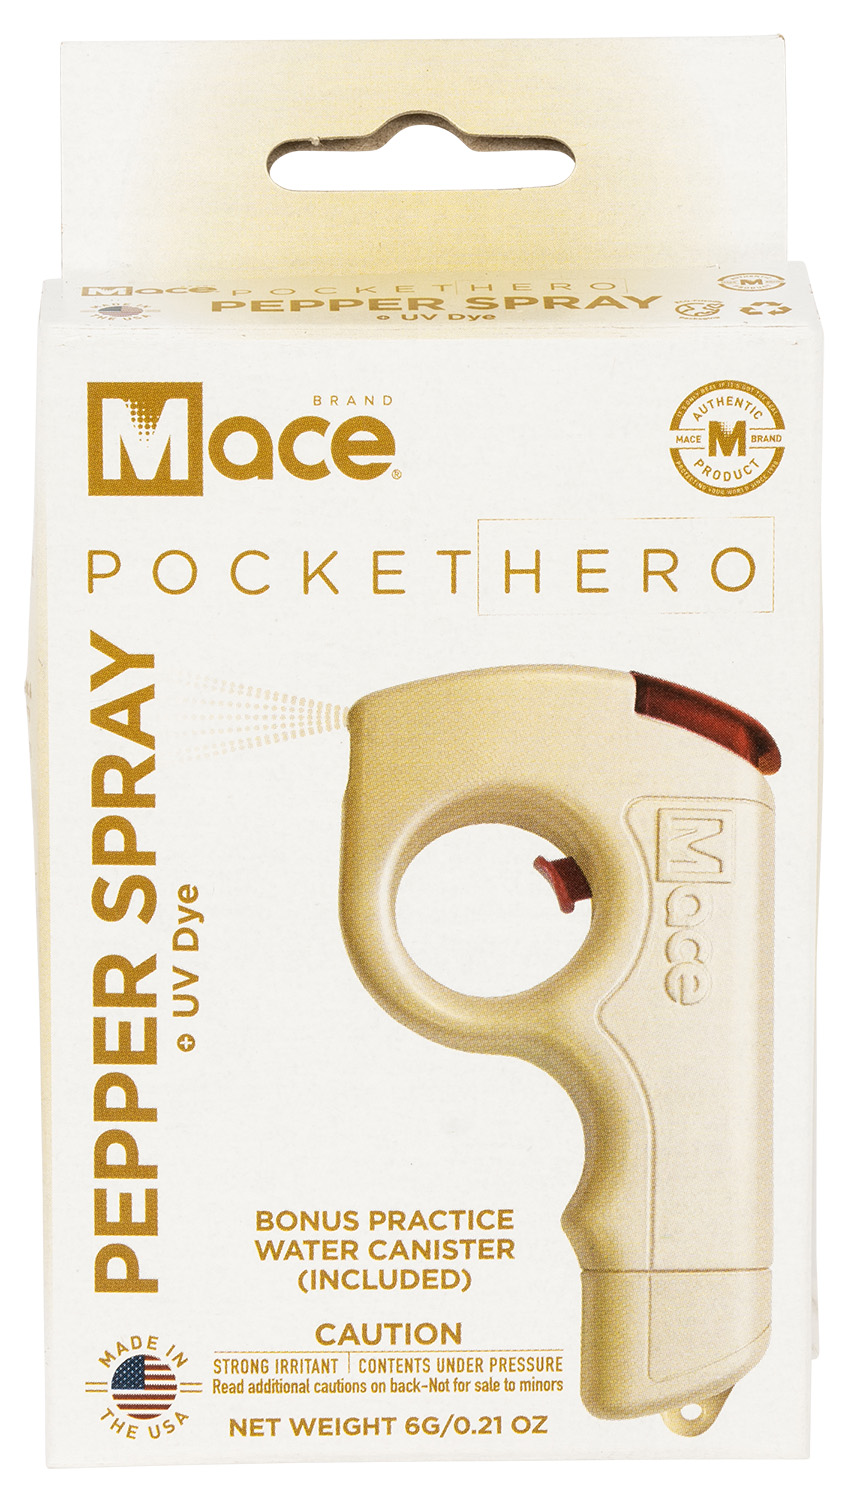 Mace 80778 Pocket Pepper Spray OC Pepper 10 Burst Range 10 ft Champagne | 843925007781